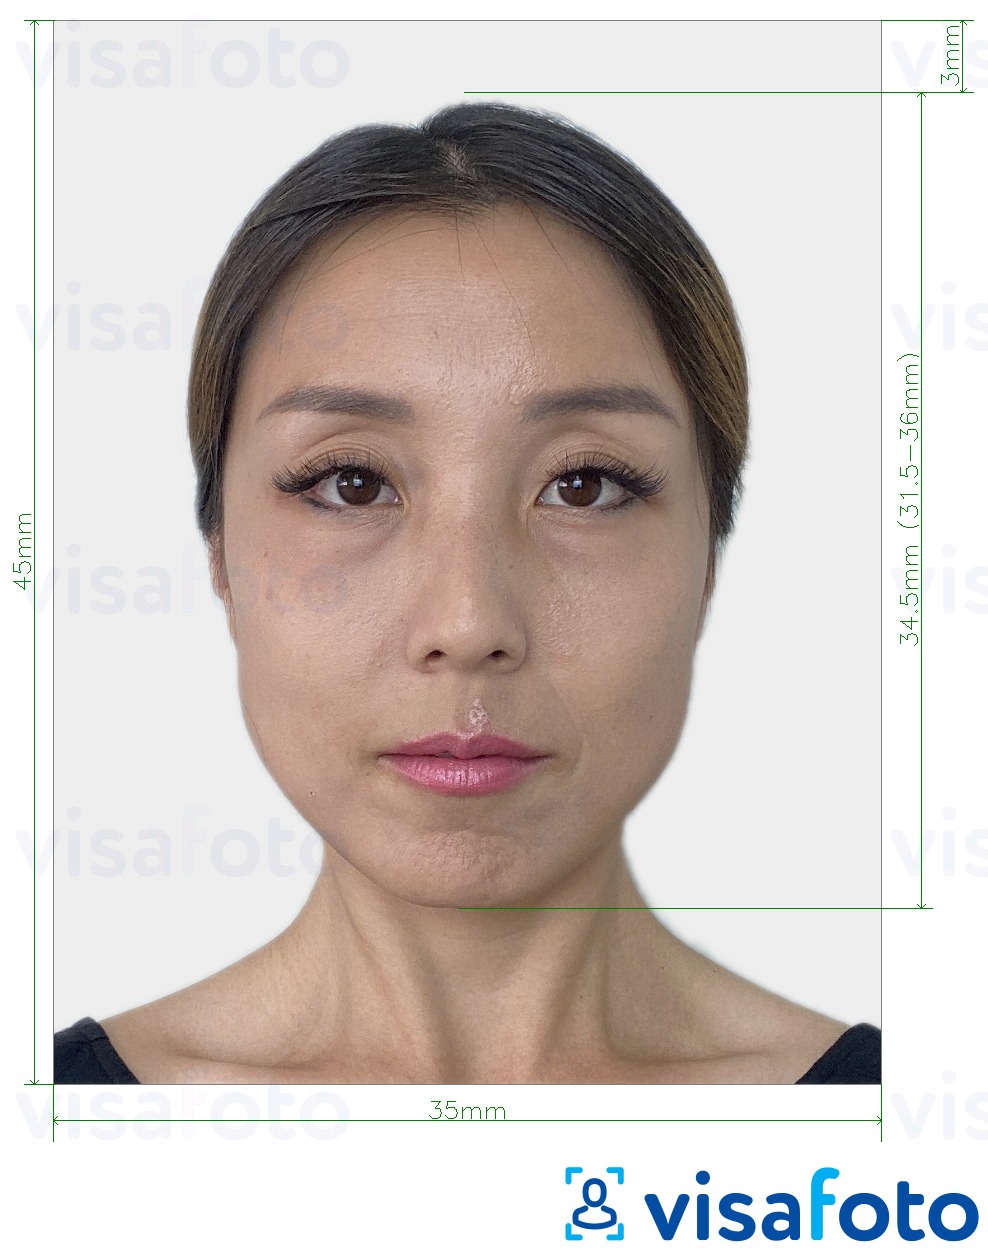 Exemple de foto per a Corea del Sud Visa 35x45 mm (3.5x4.5 cm) amb la mida exacta especificada